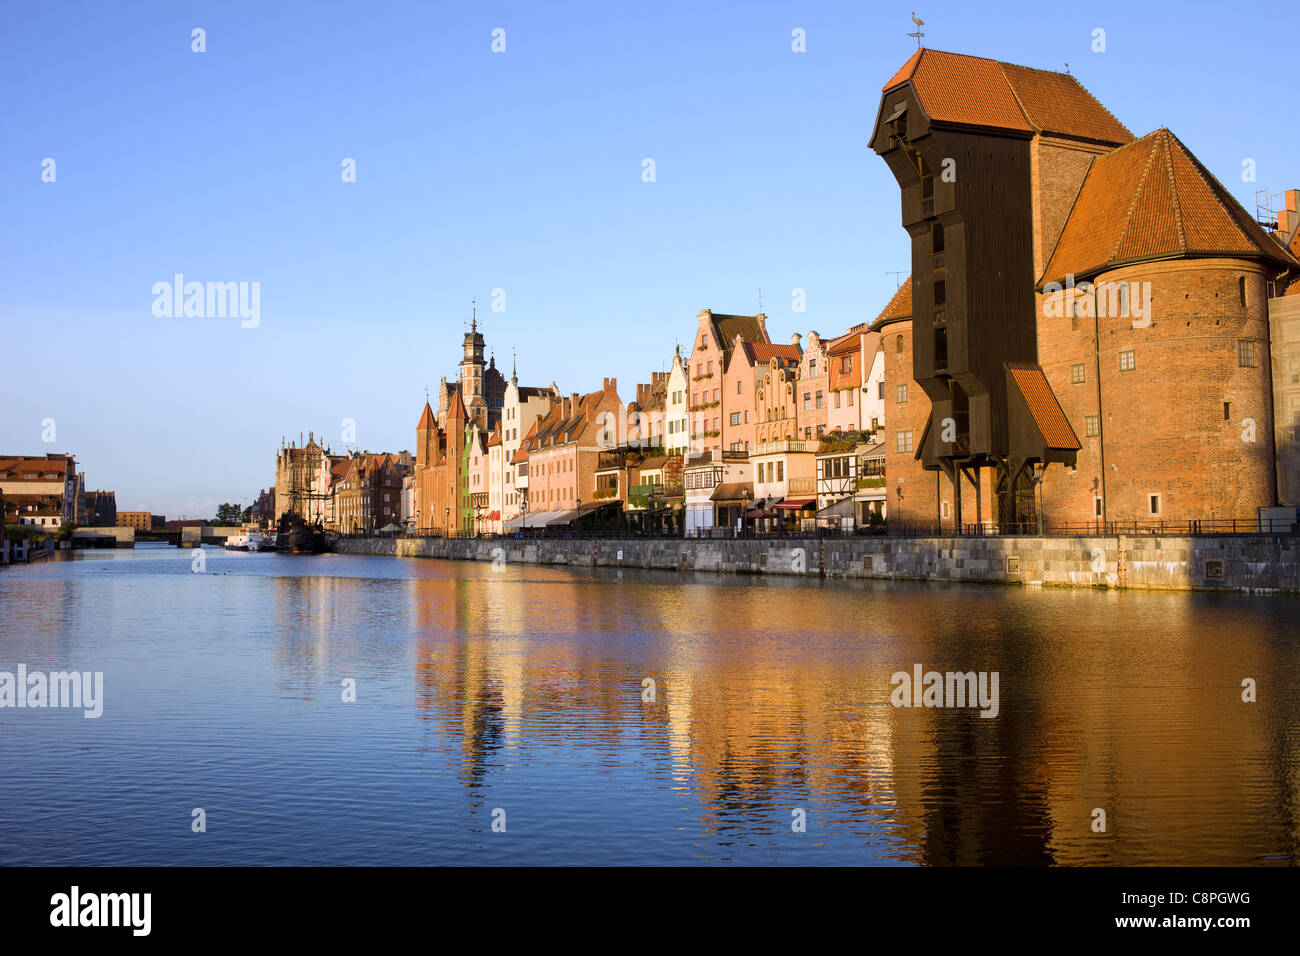 Stadt Danzig, Altstadt skyline Mottlau in Polen und der Kran (Polnisch: zuraw) mittelalterliche Wahrzeichen. Stockfoto